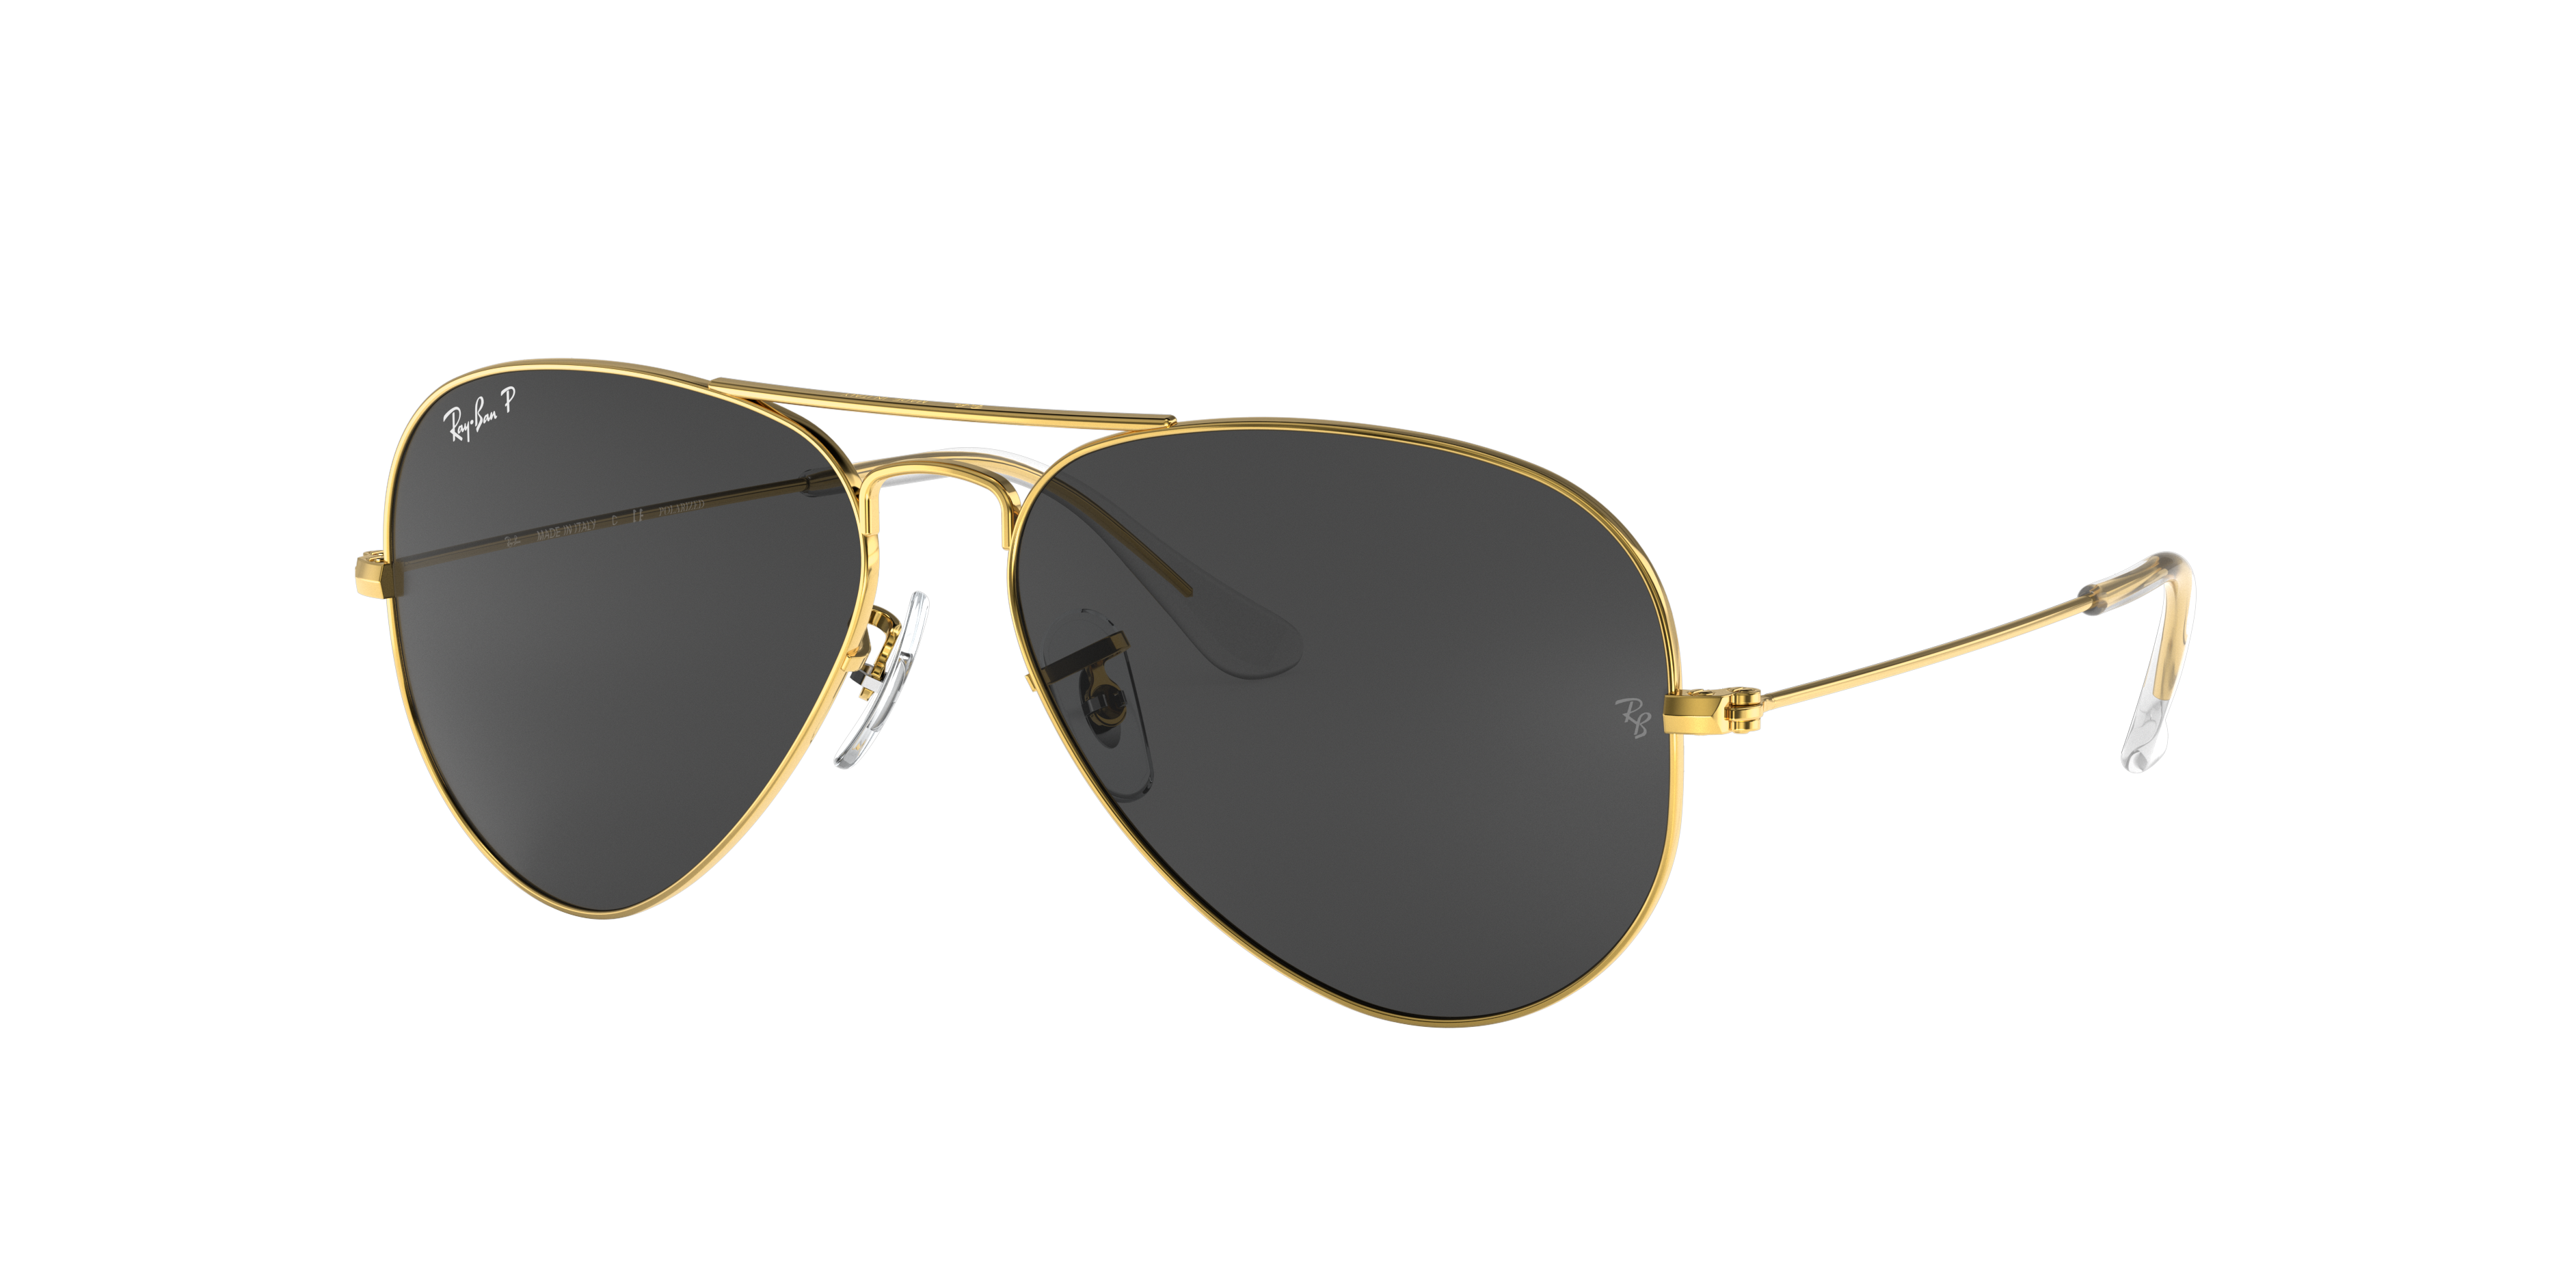 Arriba 58+ imagen ray ban sunglasses gold frame black lens